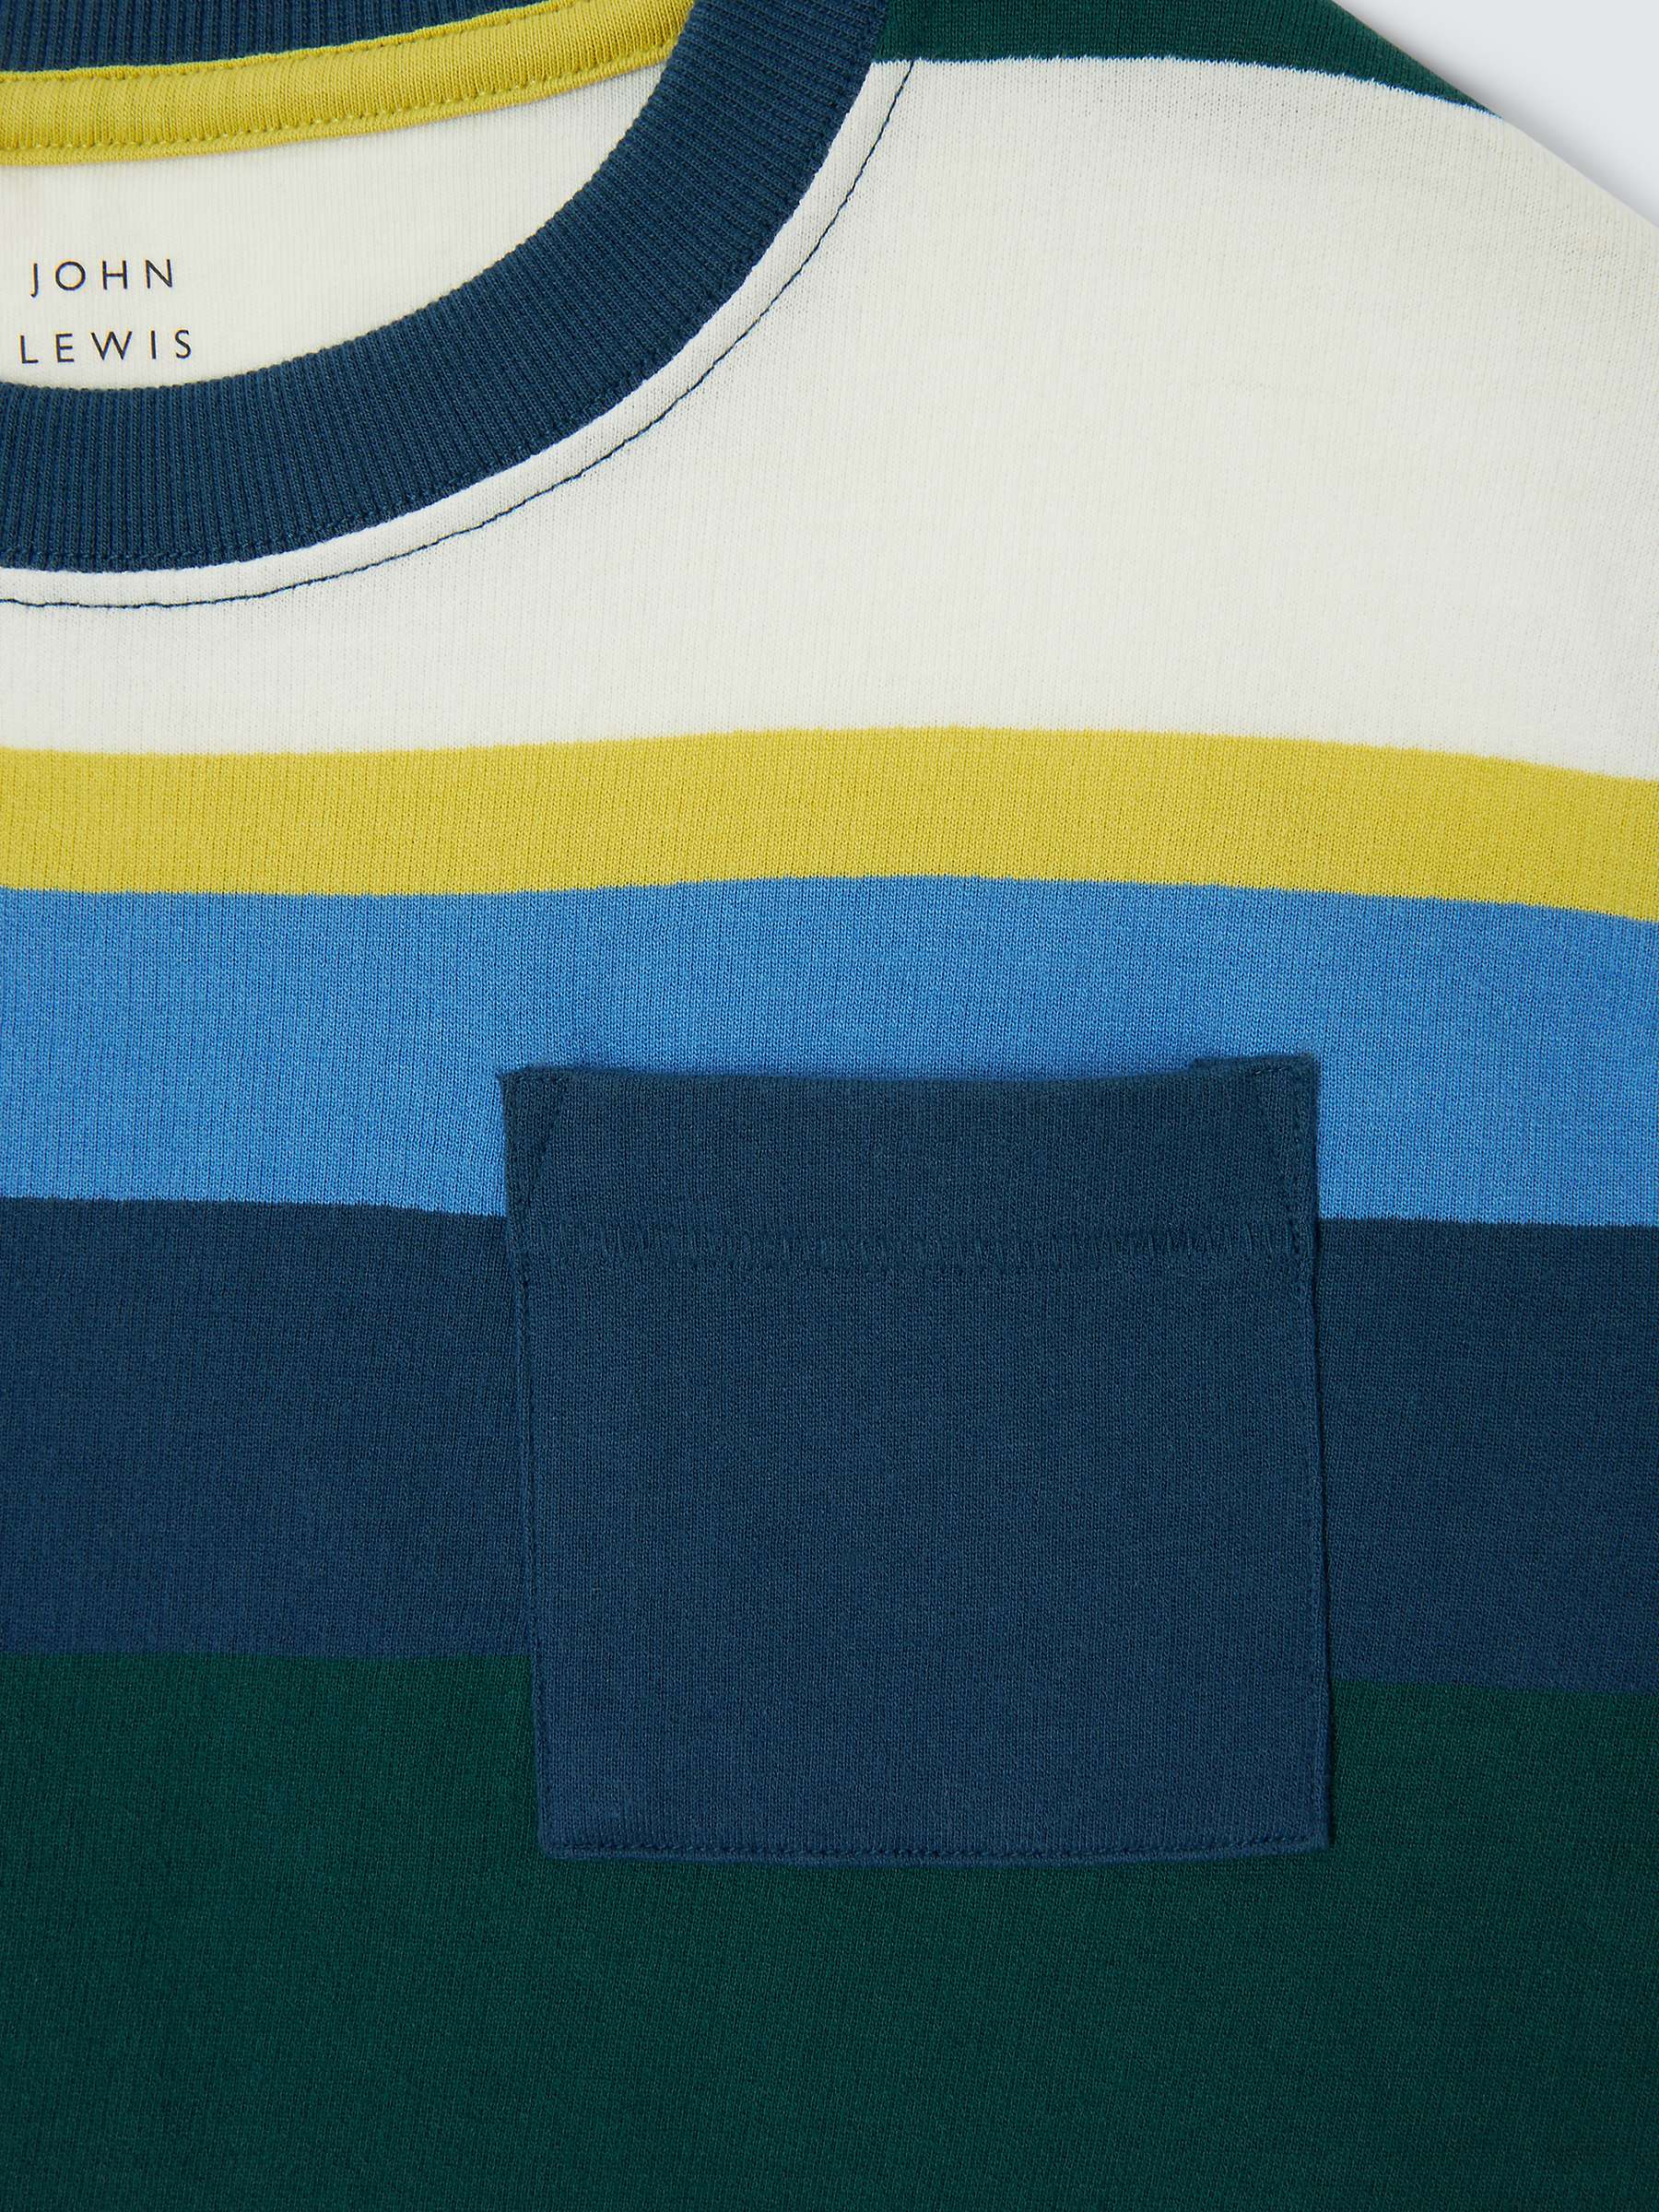 Buy John Lewis Multi Block Stripe T-Shirt Online at johnlewis.com